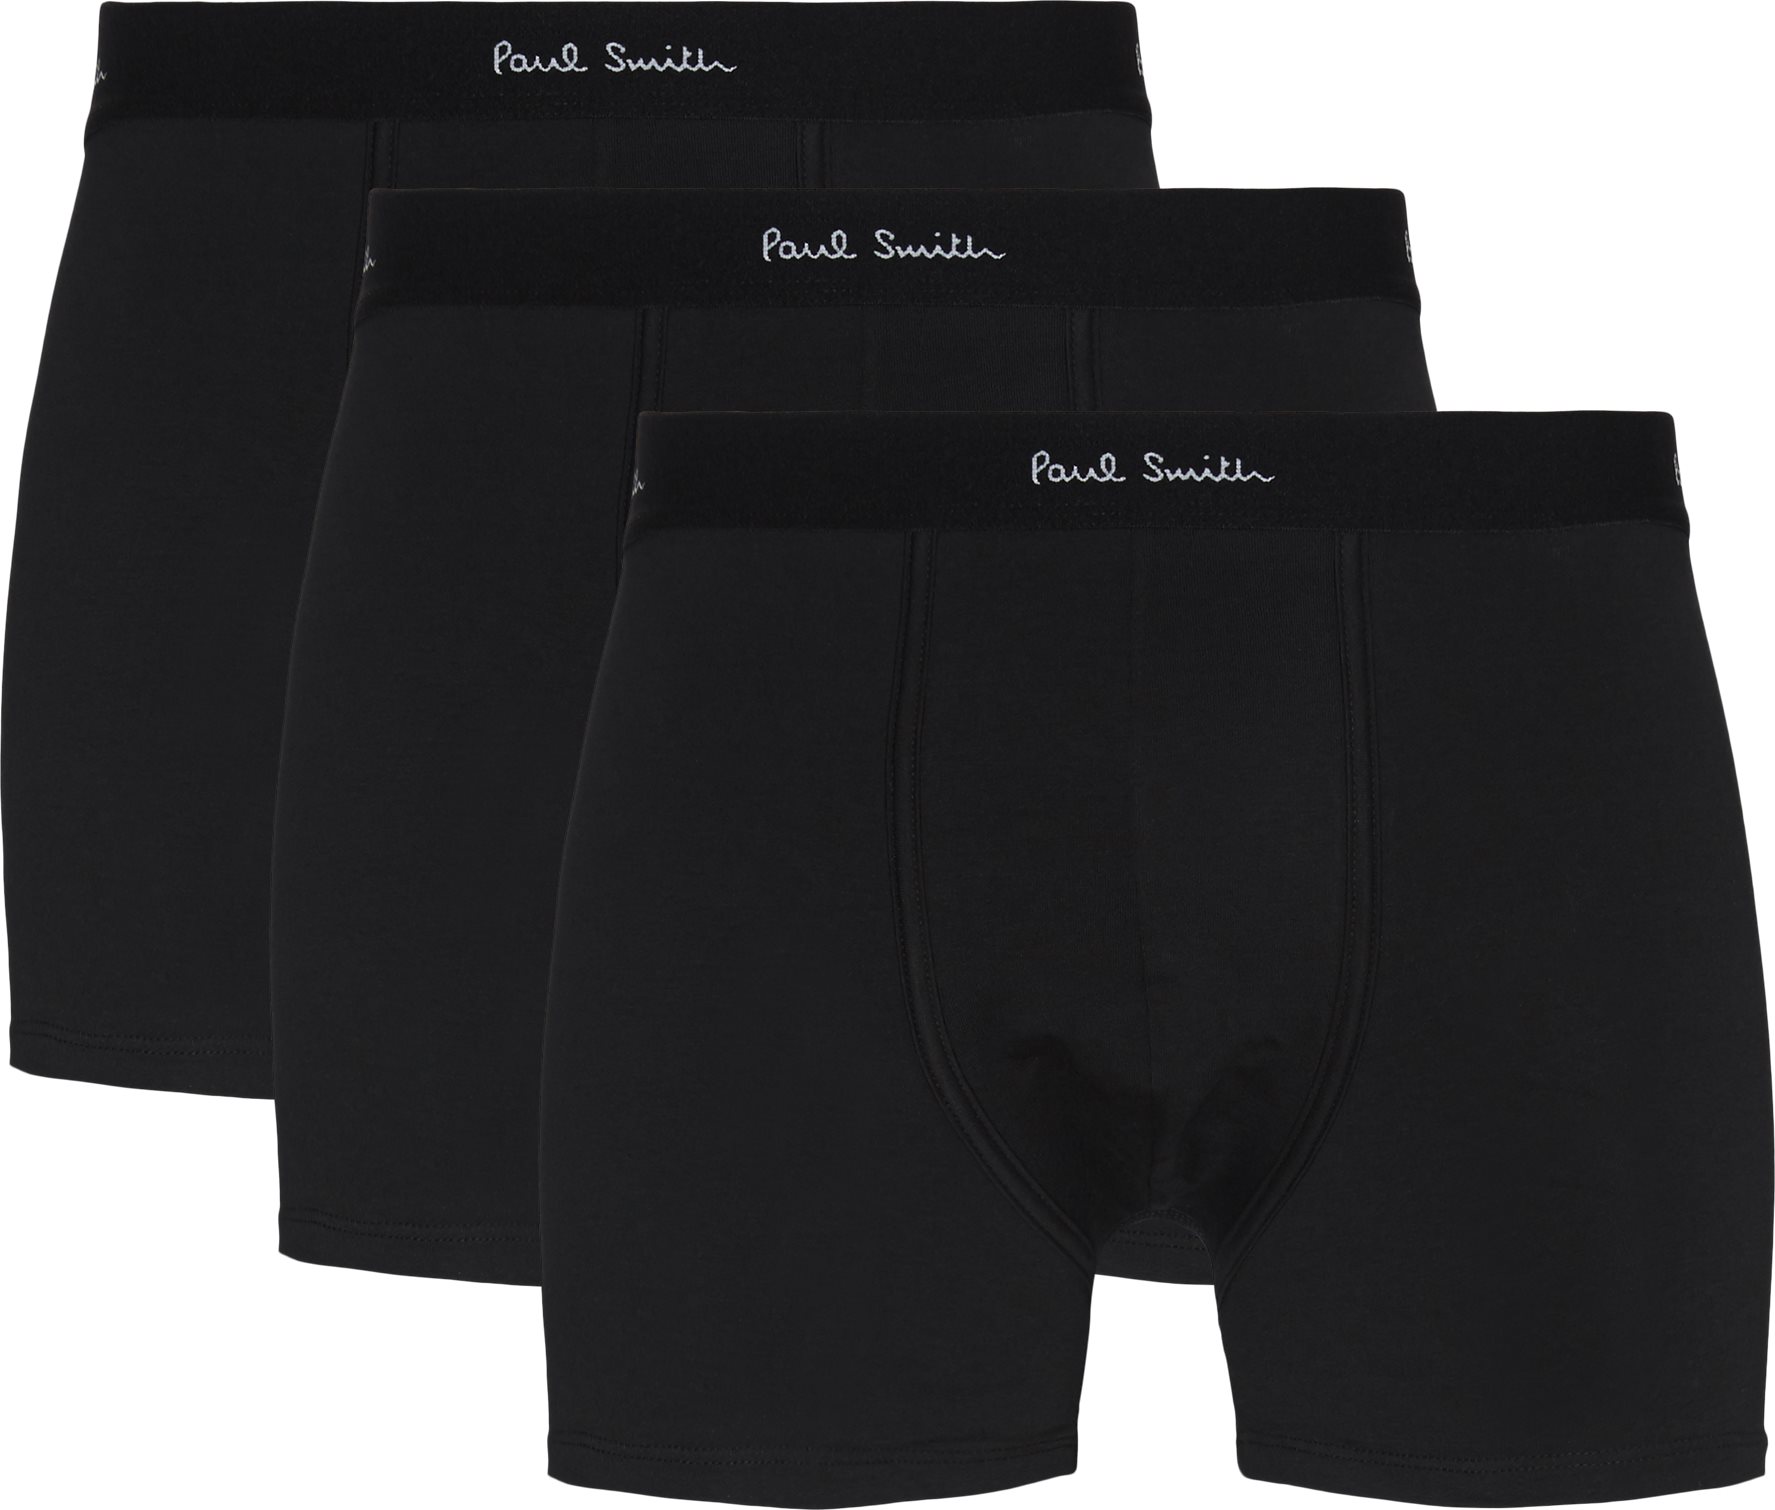 Paul Smith Accessories Underwear 480E A3PCK Black